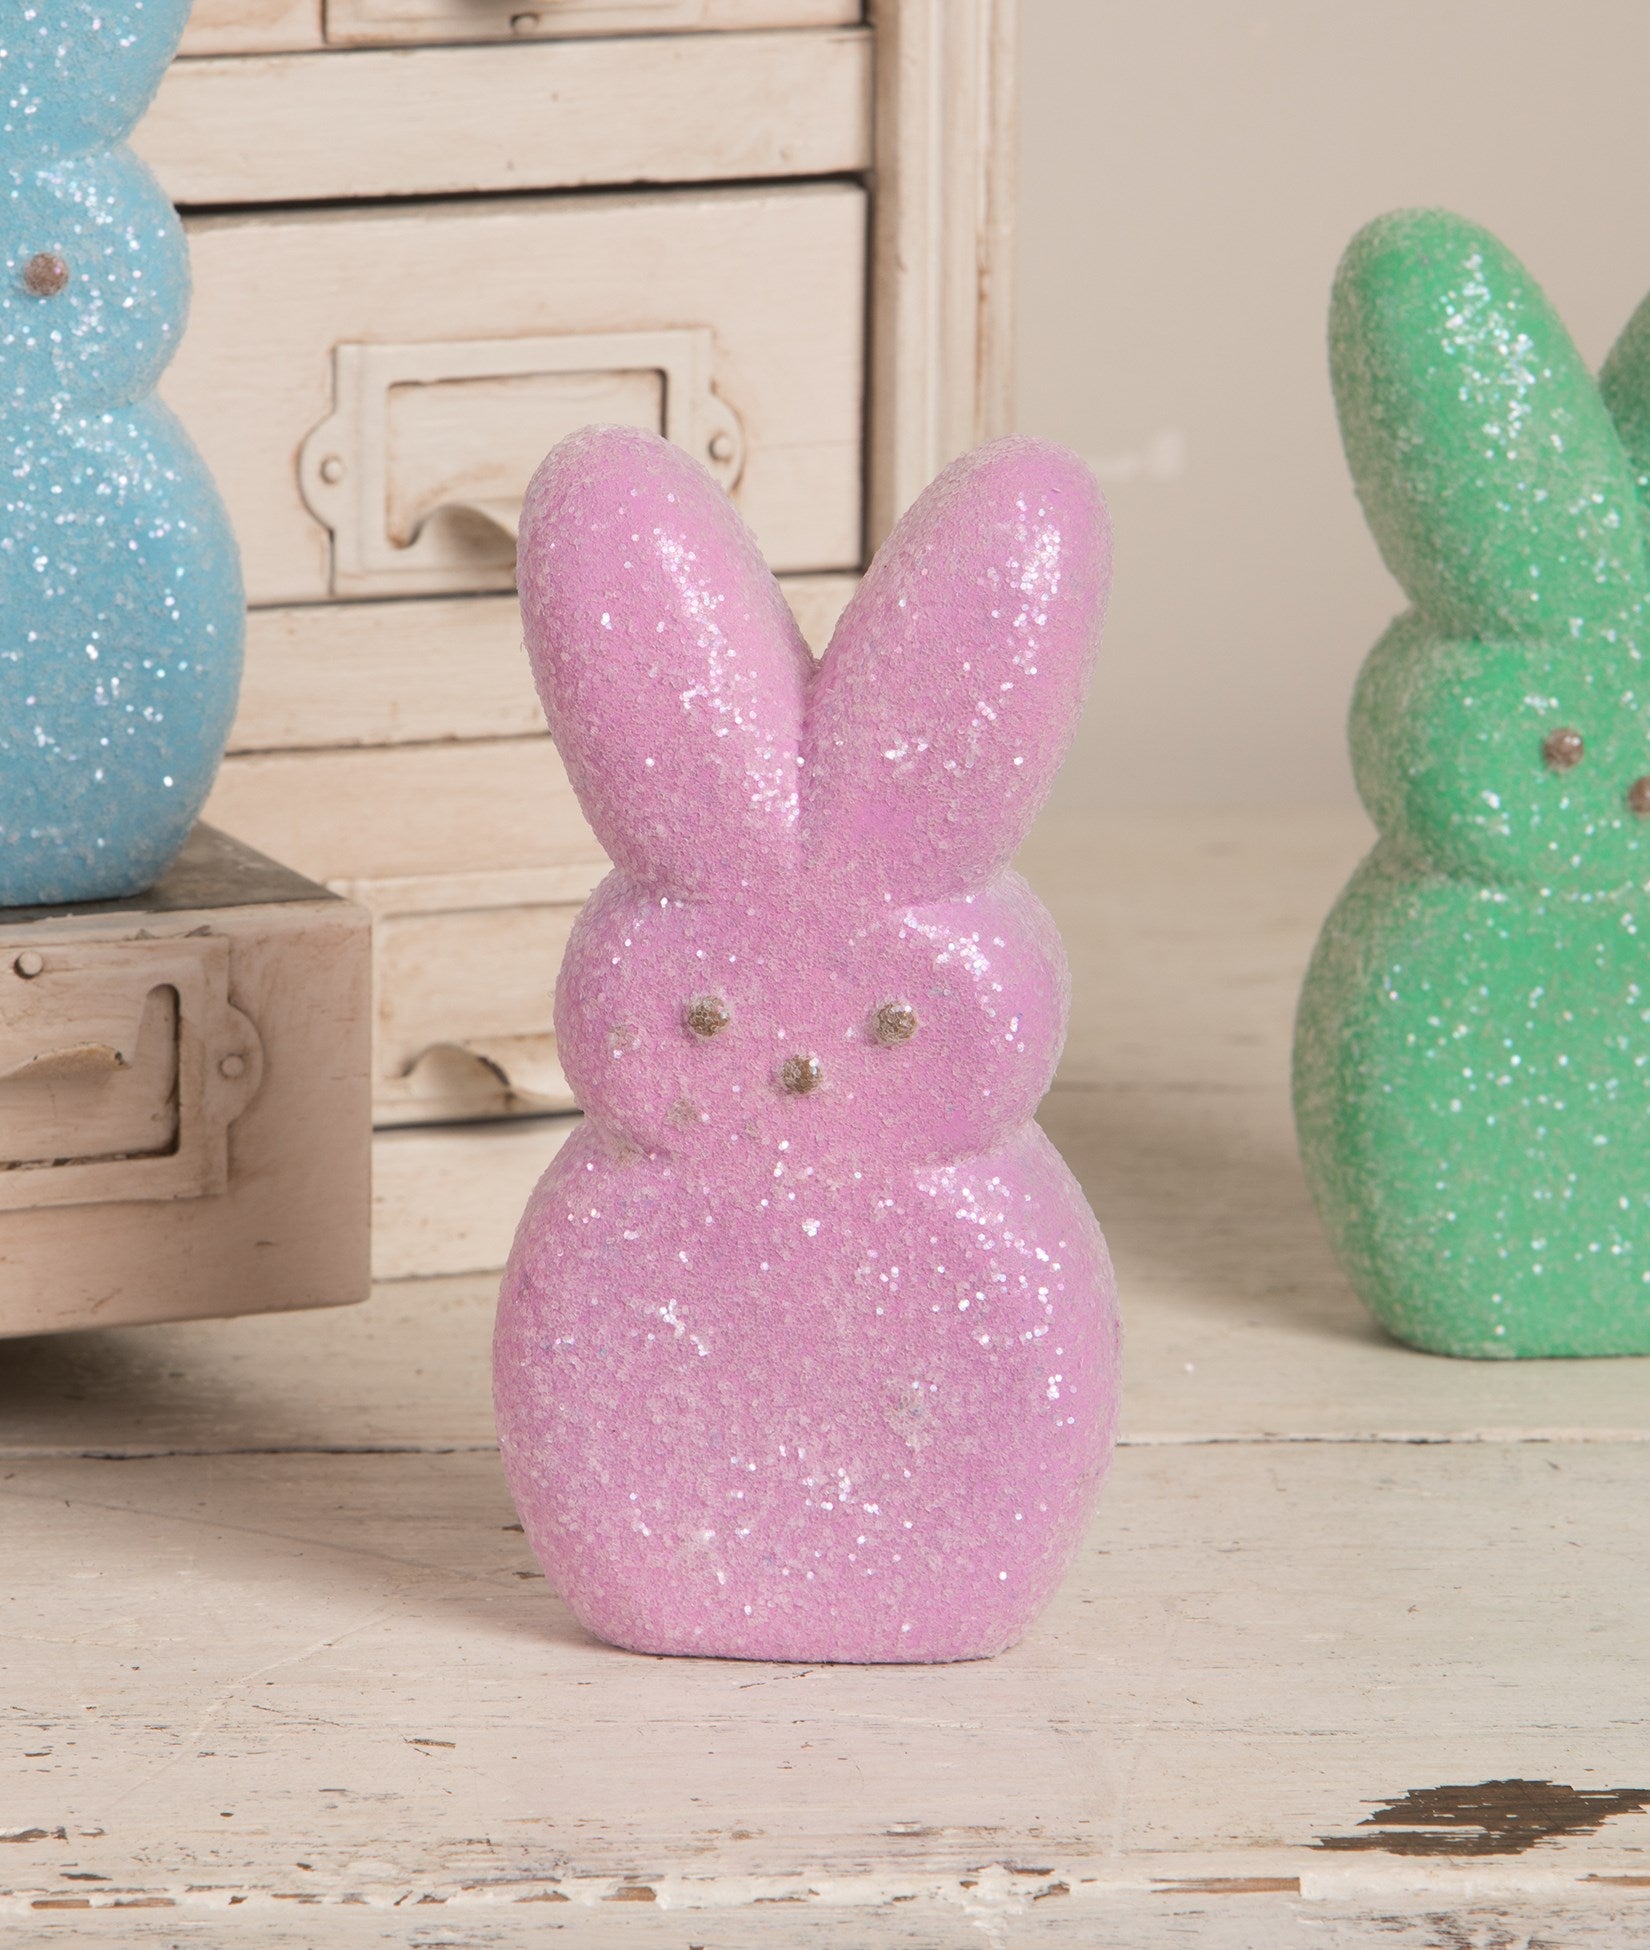 Peeps® Lavender Bunny Figurine, 6"